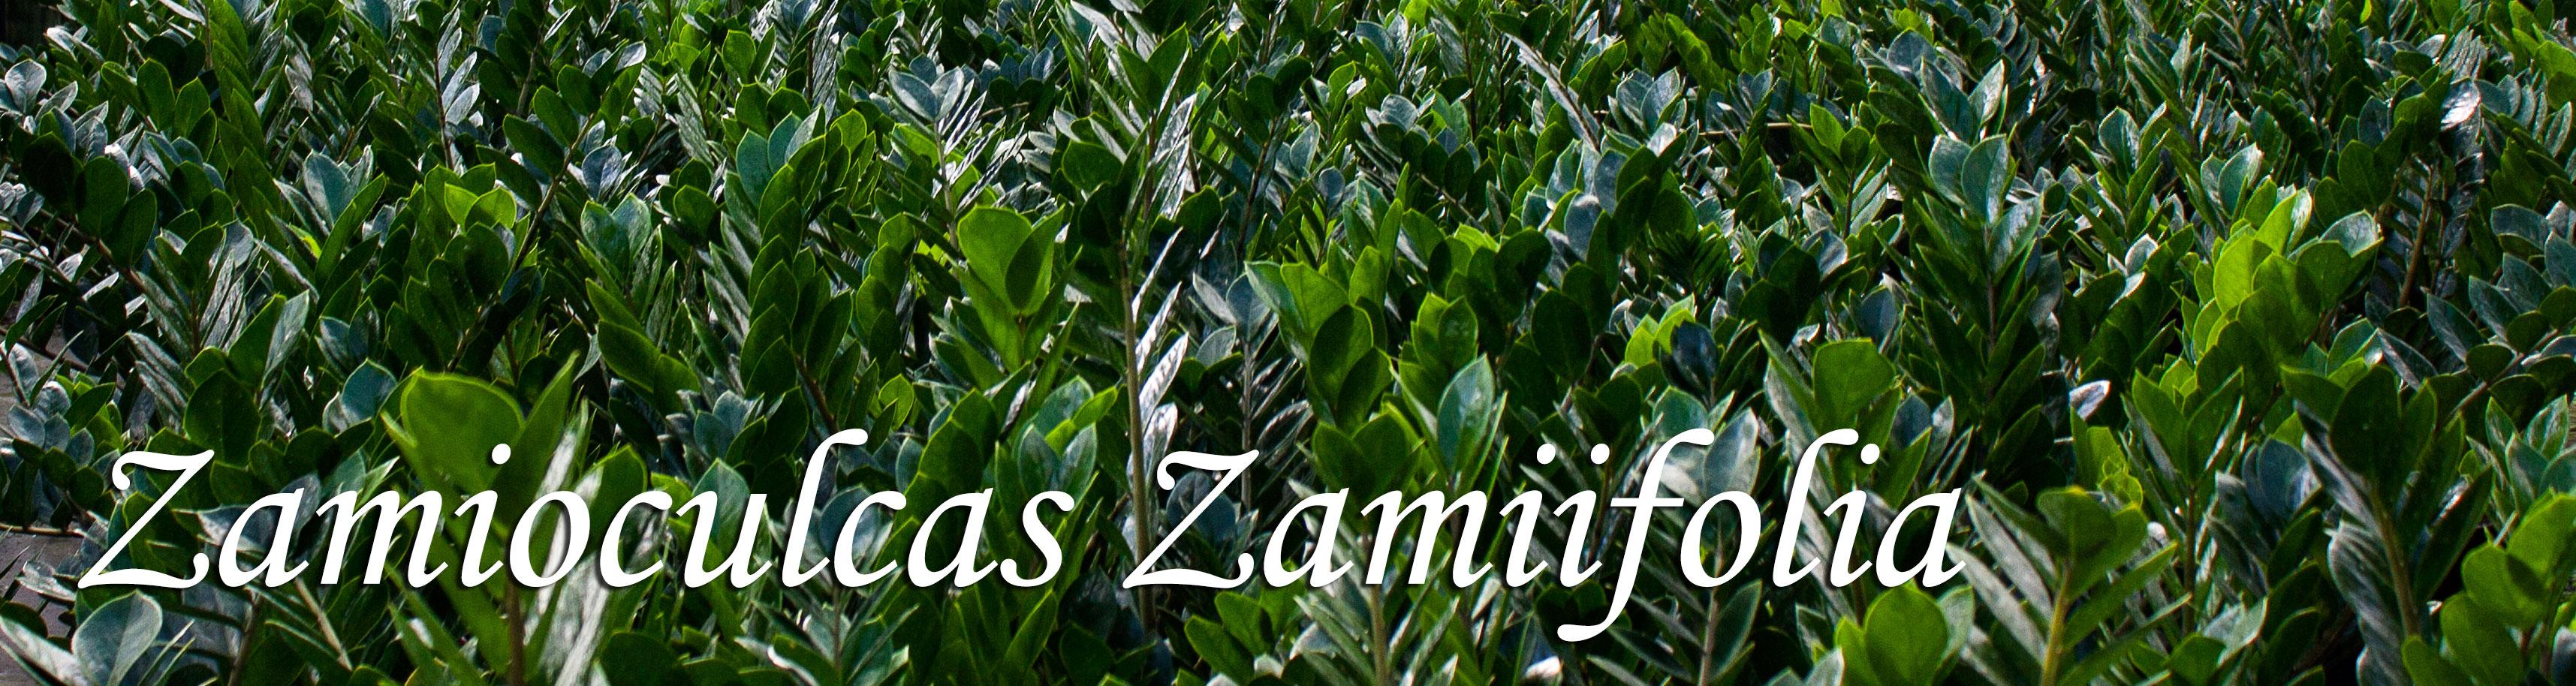 Zamioculcas Zamiifolia ("ZZ")